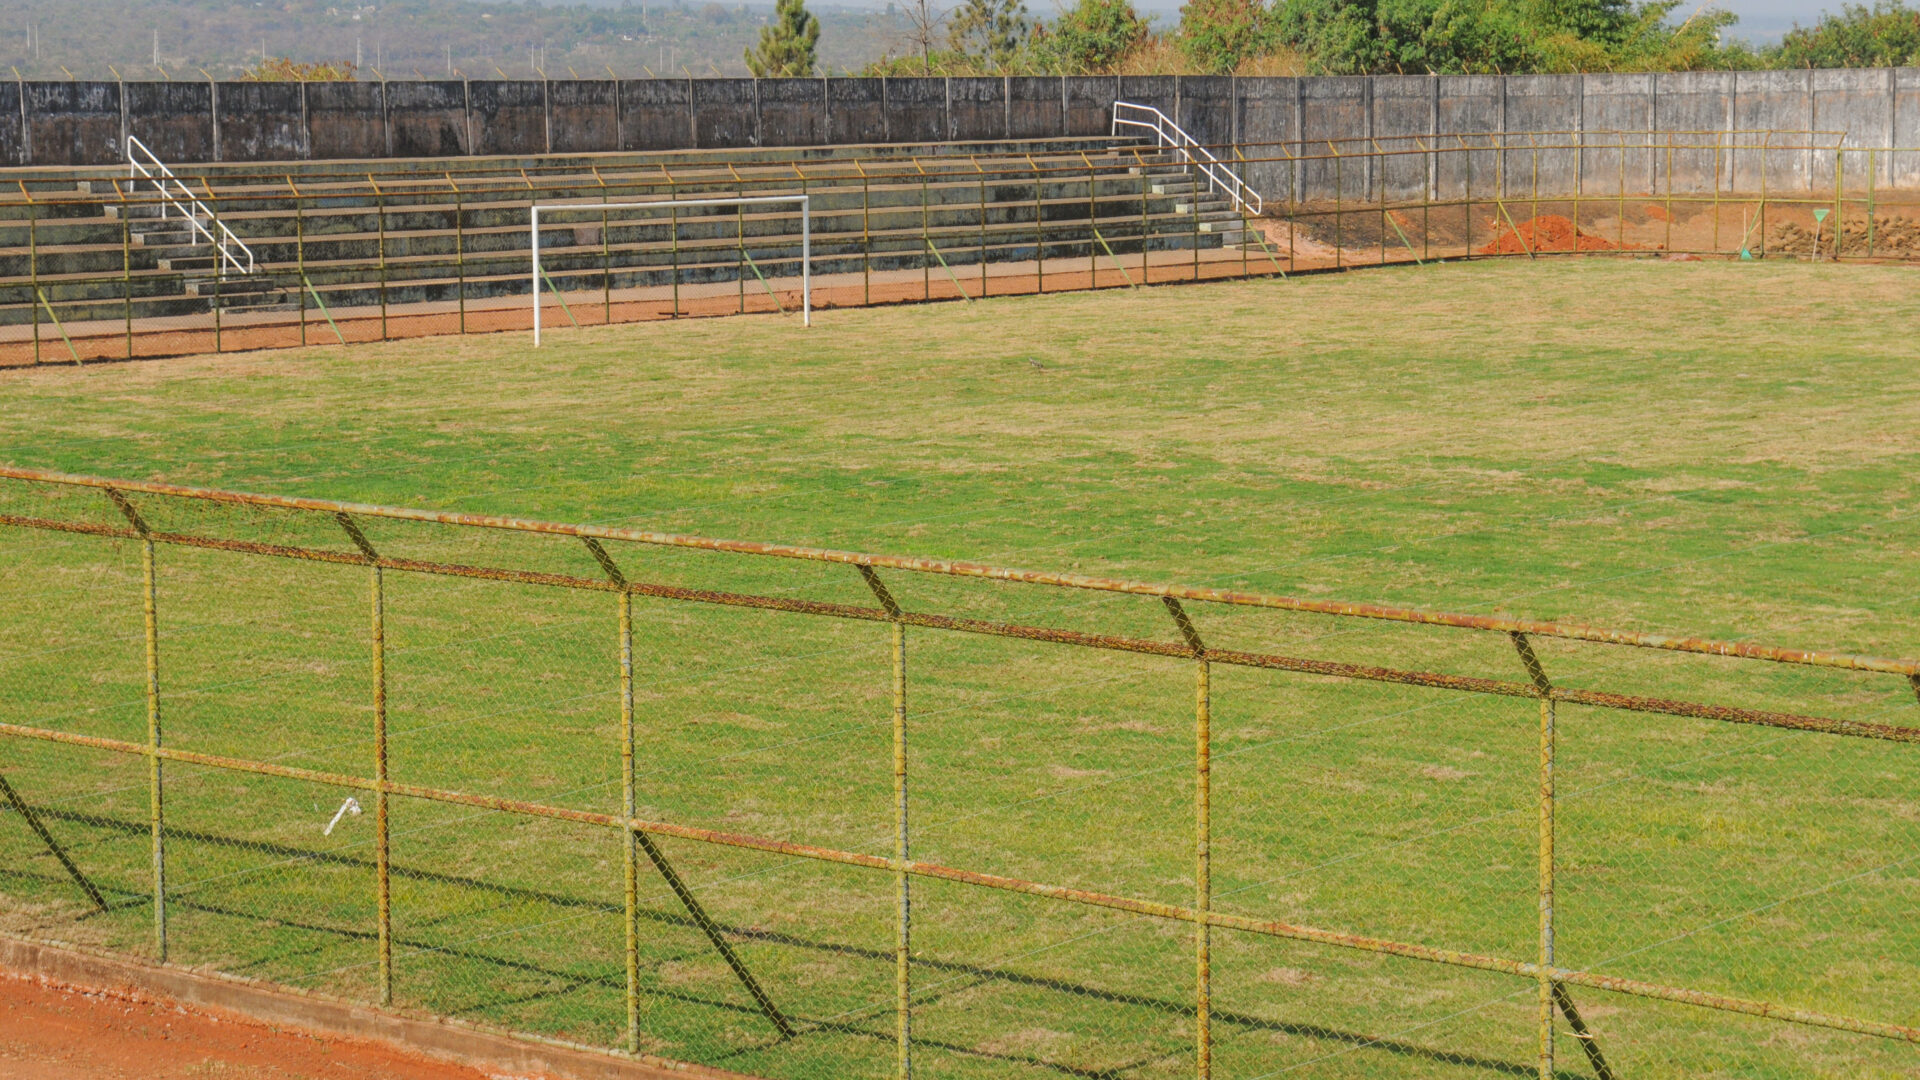 Os buracos do campo de futebol deram lugar ao gramado verdinho, que chama a atenção nessa época seca de Brasília | Foto: Paulo H. Carvalho/Agência Brasília